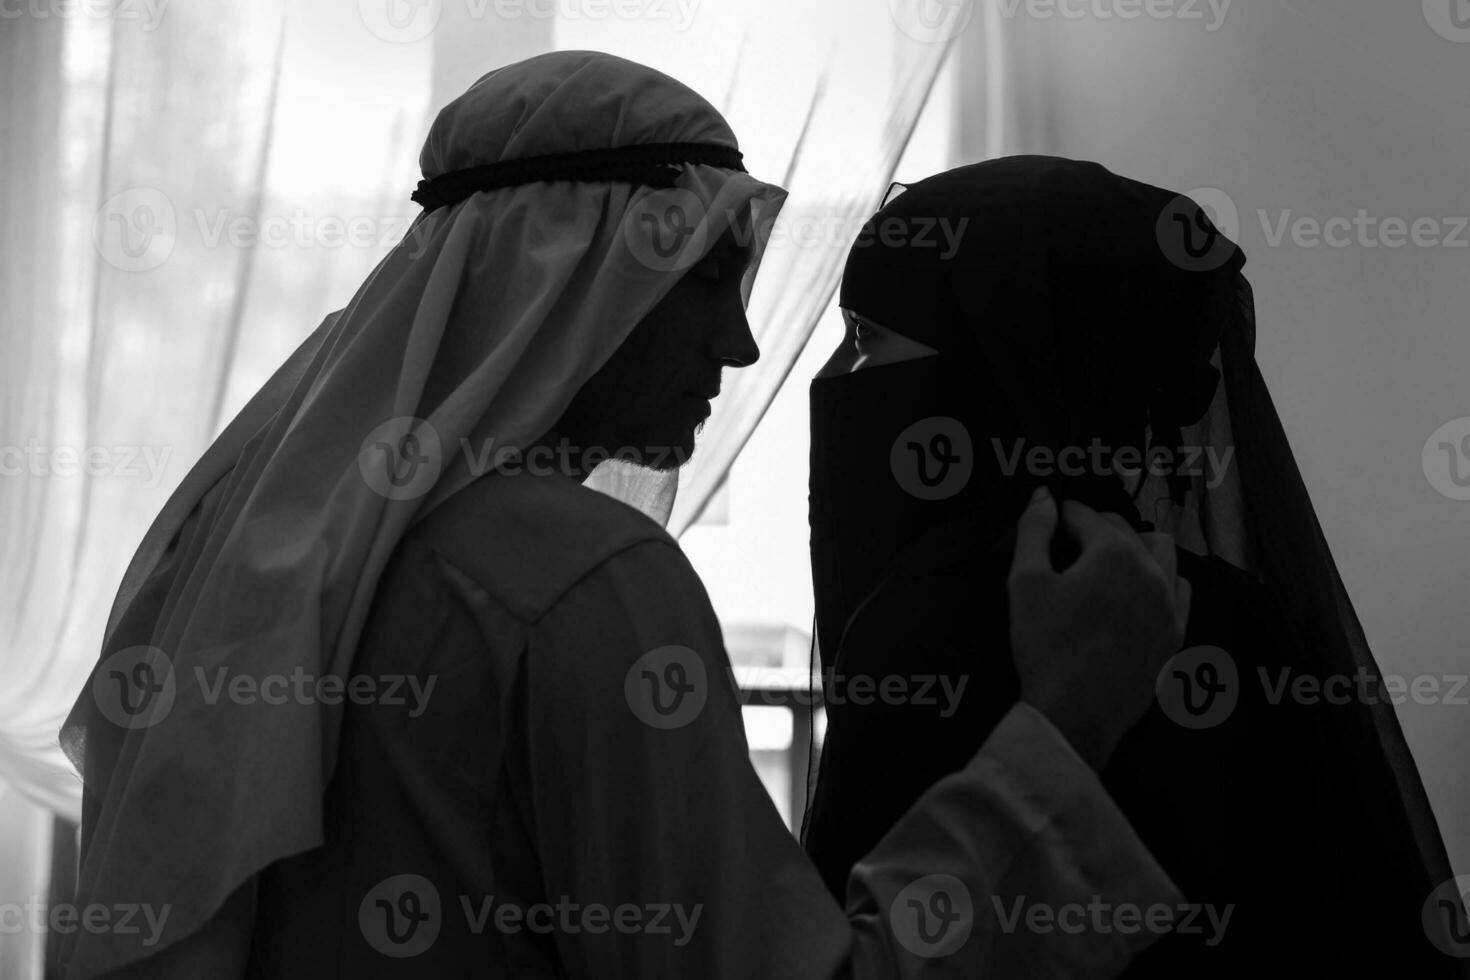 arabo coppia intimo a casa foto